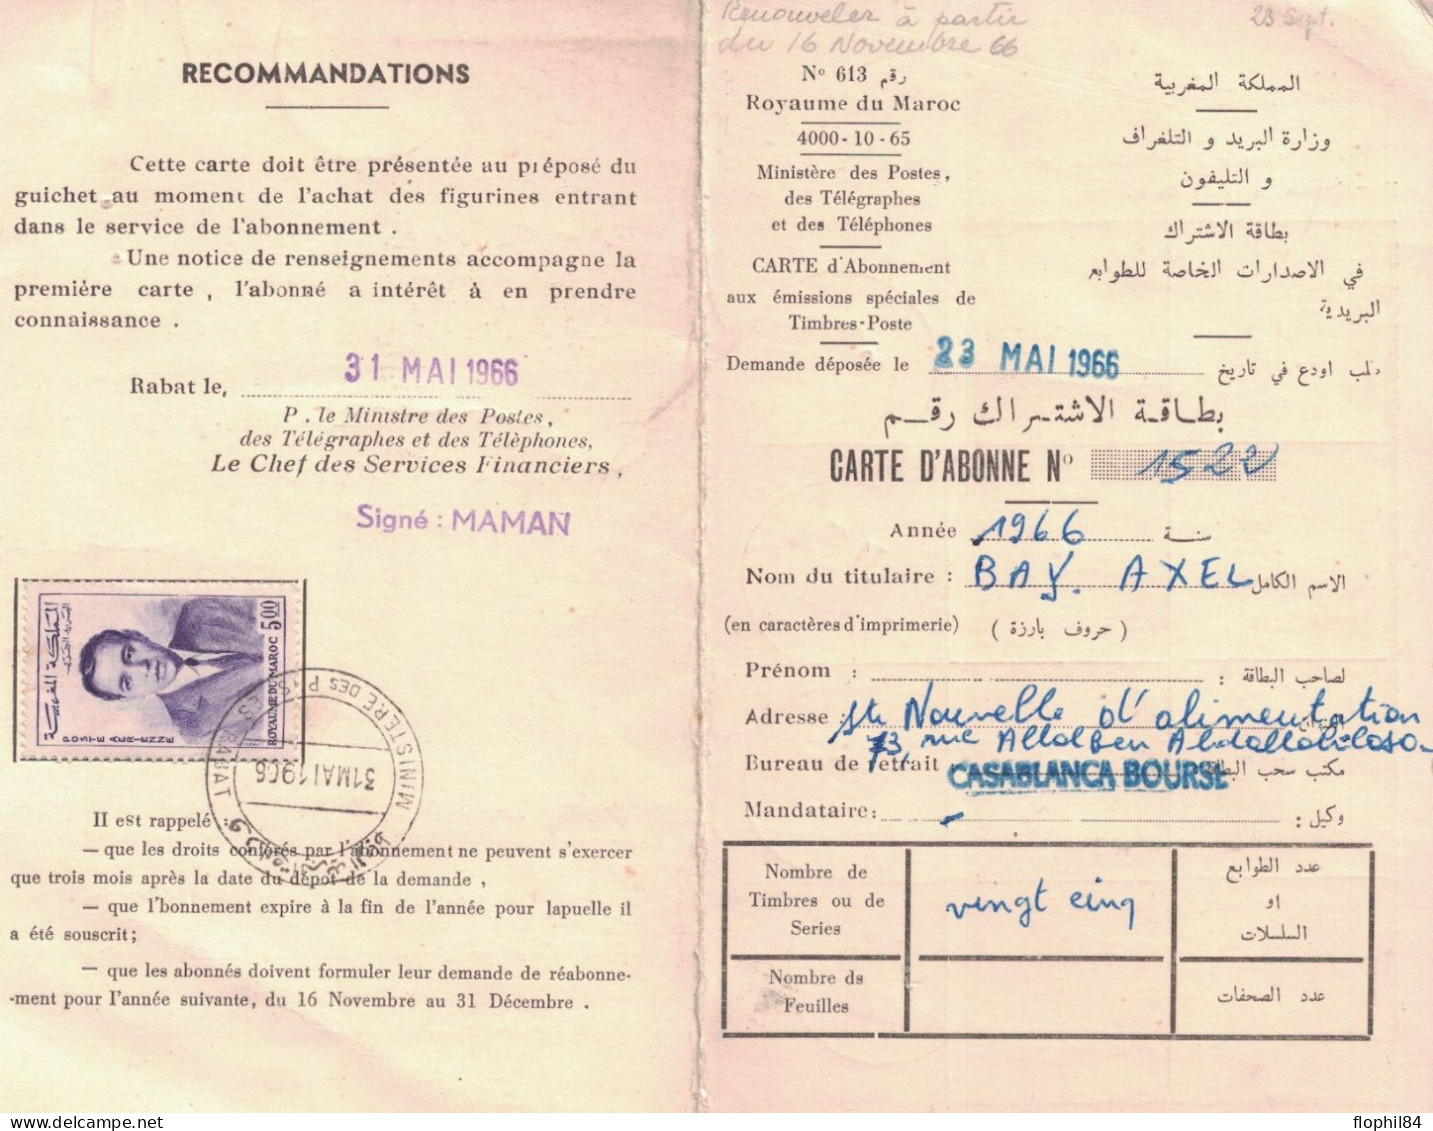 MAROC - 5d POSTE AERIENNE SUR CARTE D'ABONNEMENT DE 1966 DE CASABLANCA BOURSE - CACHET DES PTT LE 31 MAI 1966. - Morocco (1956-...)